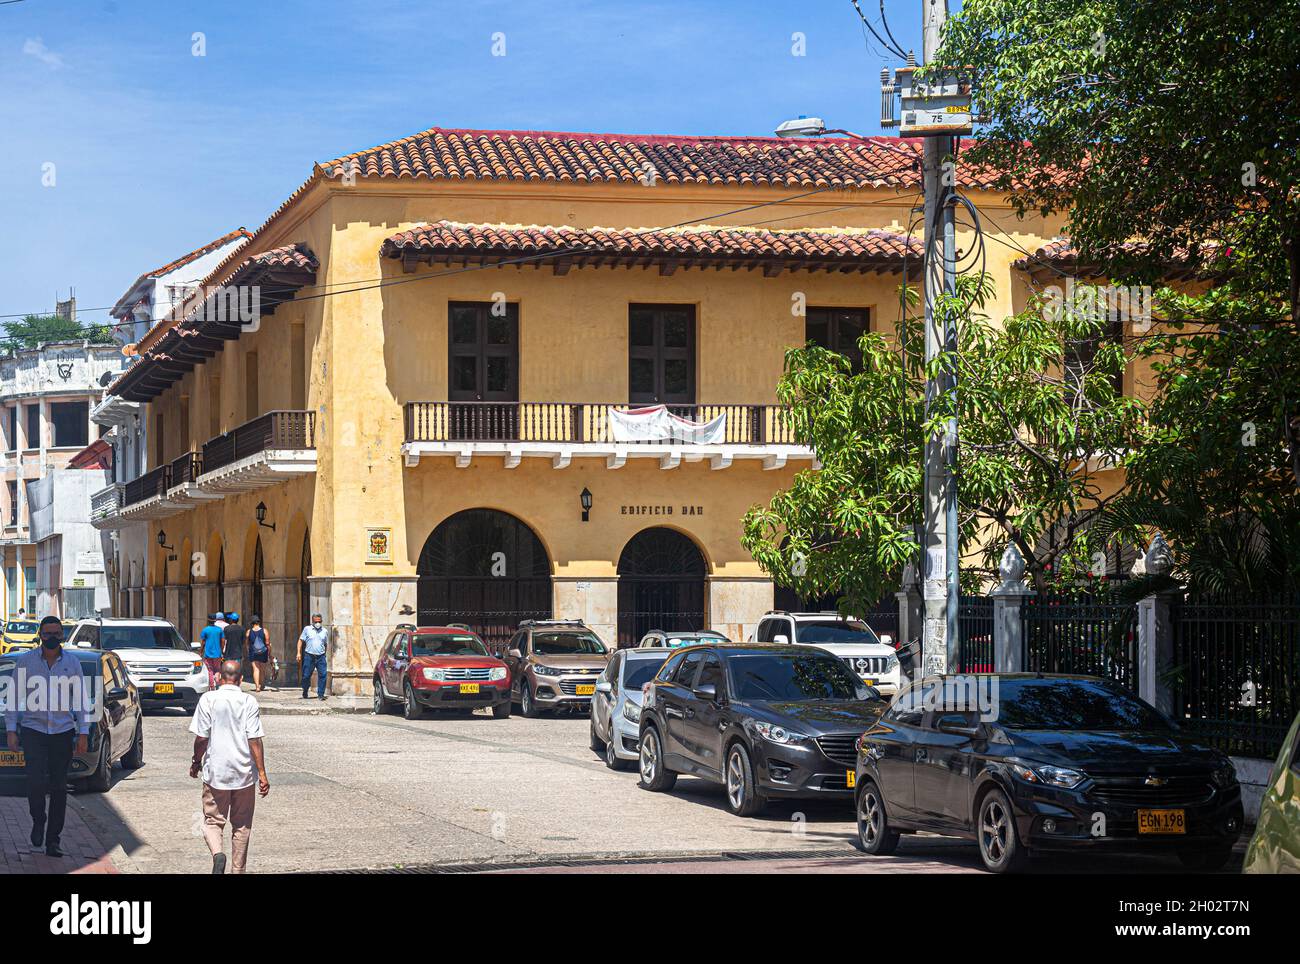 Edificio Dau, Cartagena de Indias, Colombia. Stock Photo